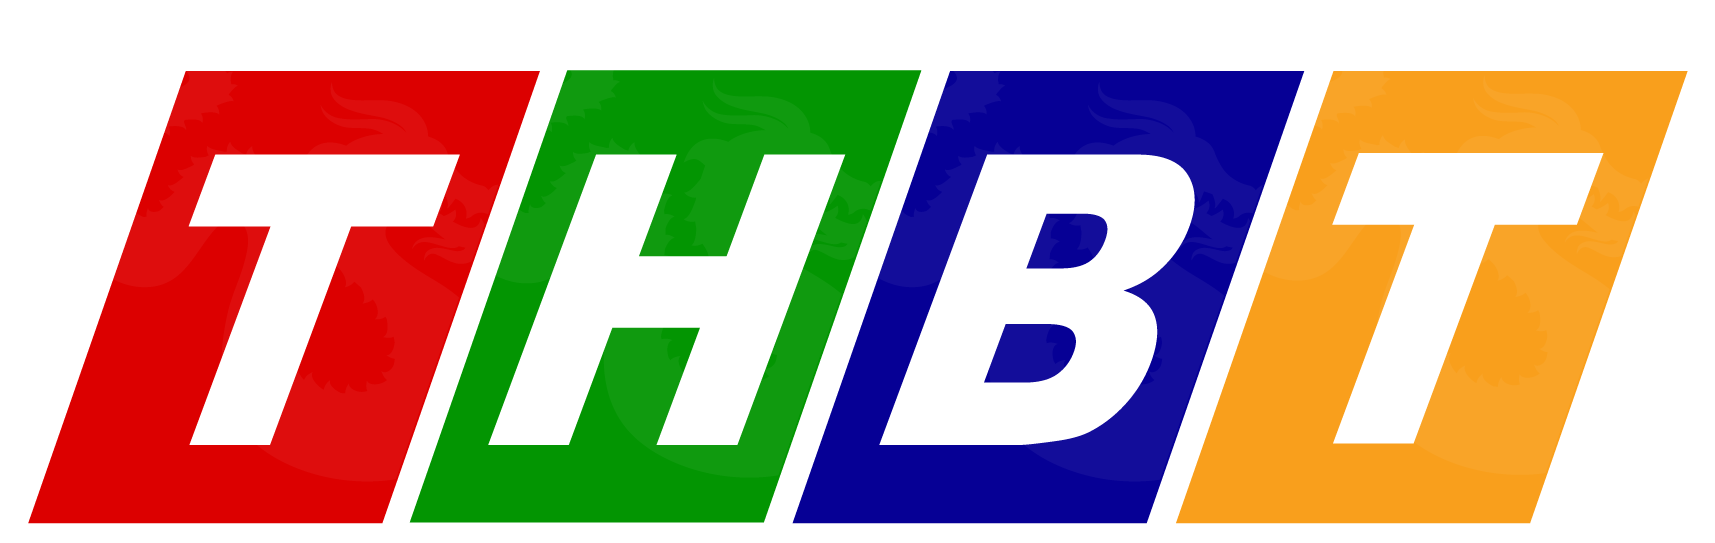 THBT_logo2021